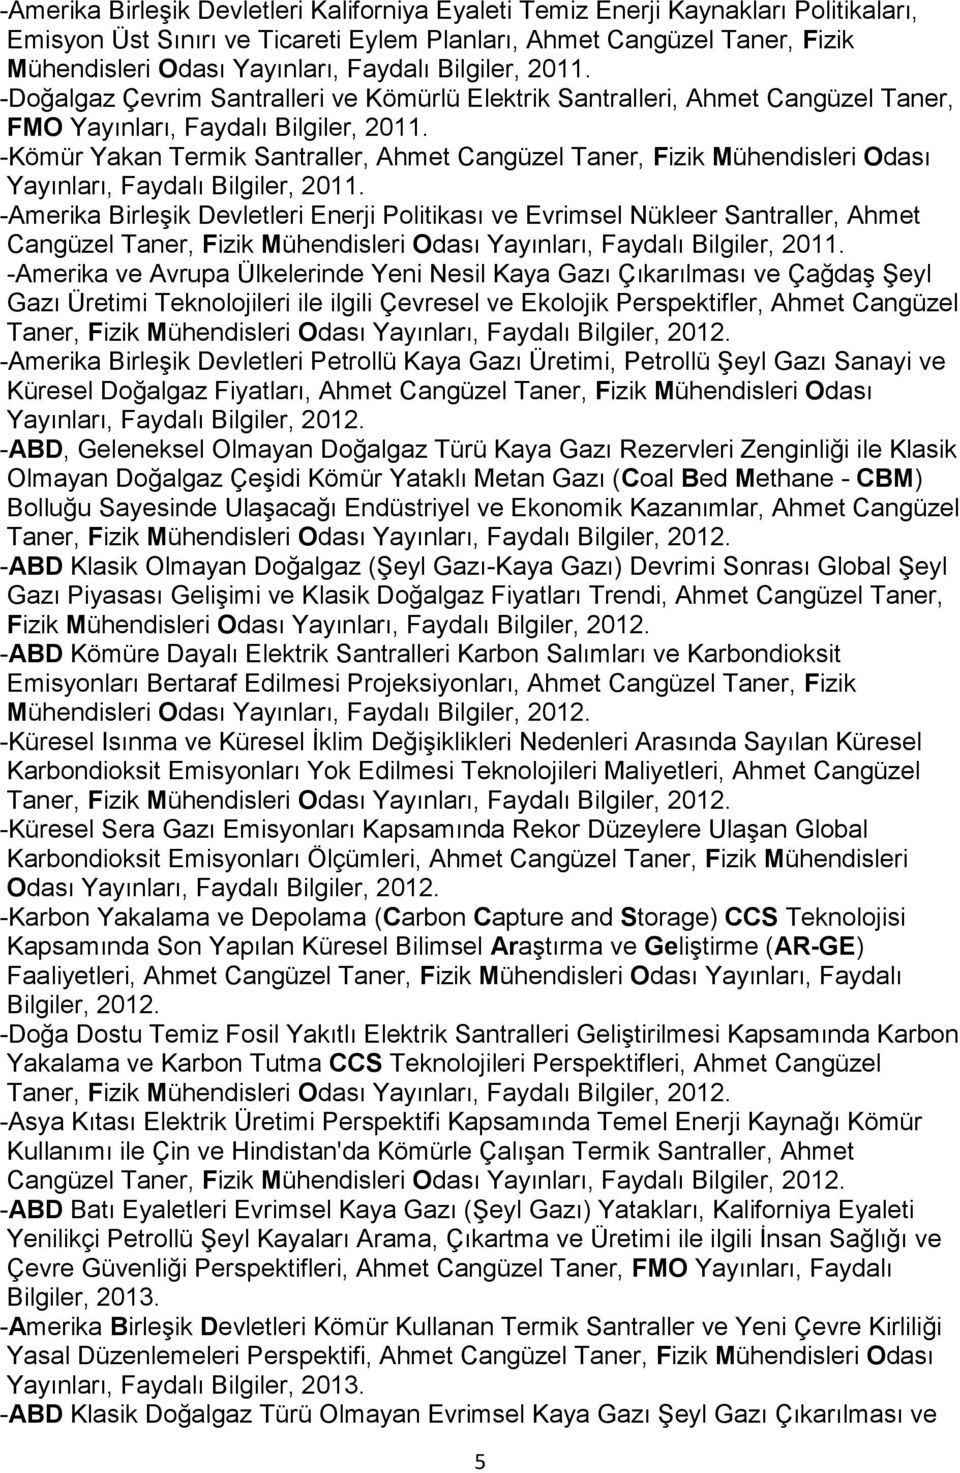 -Kömür Yakan Termik Santraller, Ahmet Cangüzel Taner, Fizik Mühendisleri Odası Yayınları, Faydalı Bilgiler, 2011.